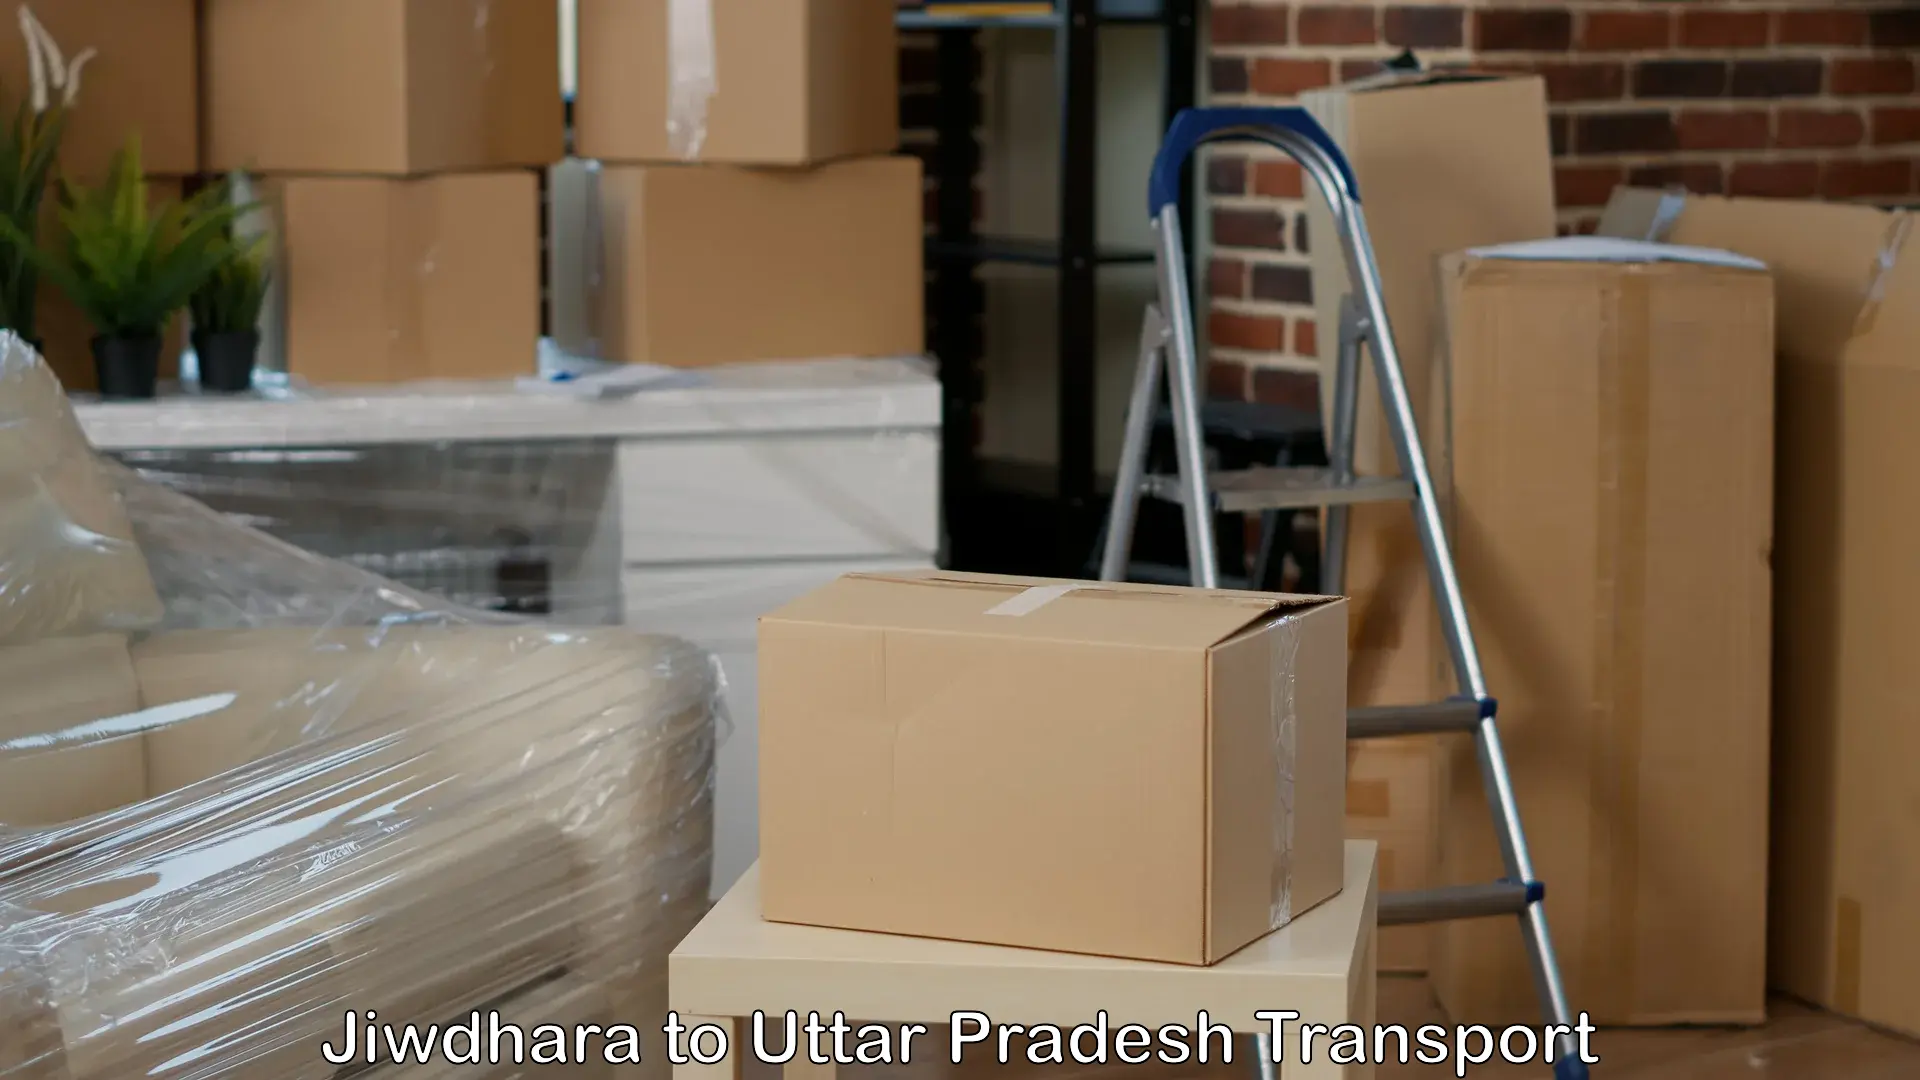 Shipping partner in Jiwdhara to Karchhana